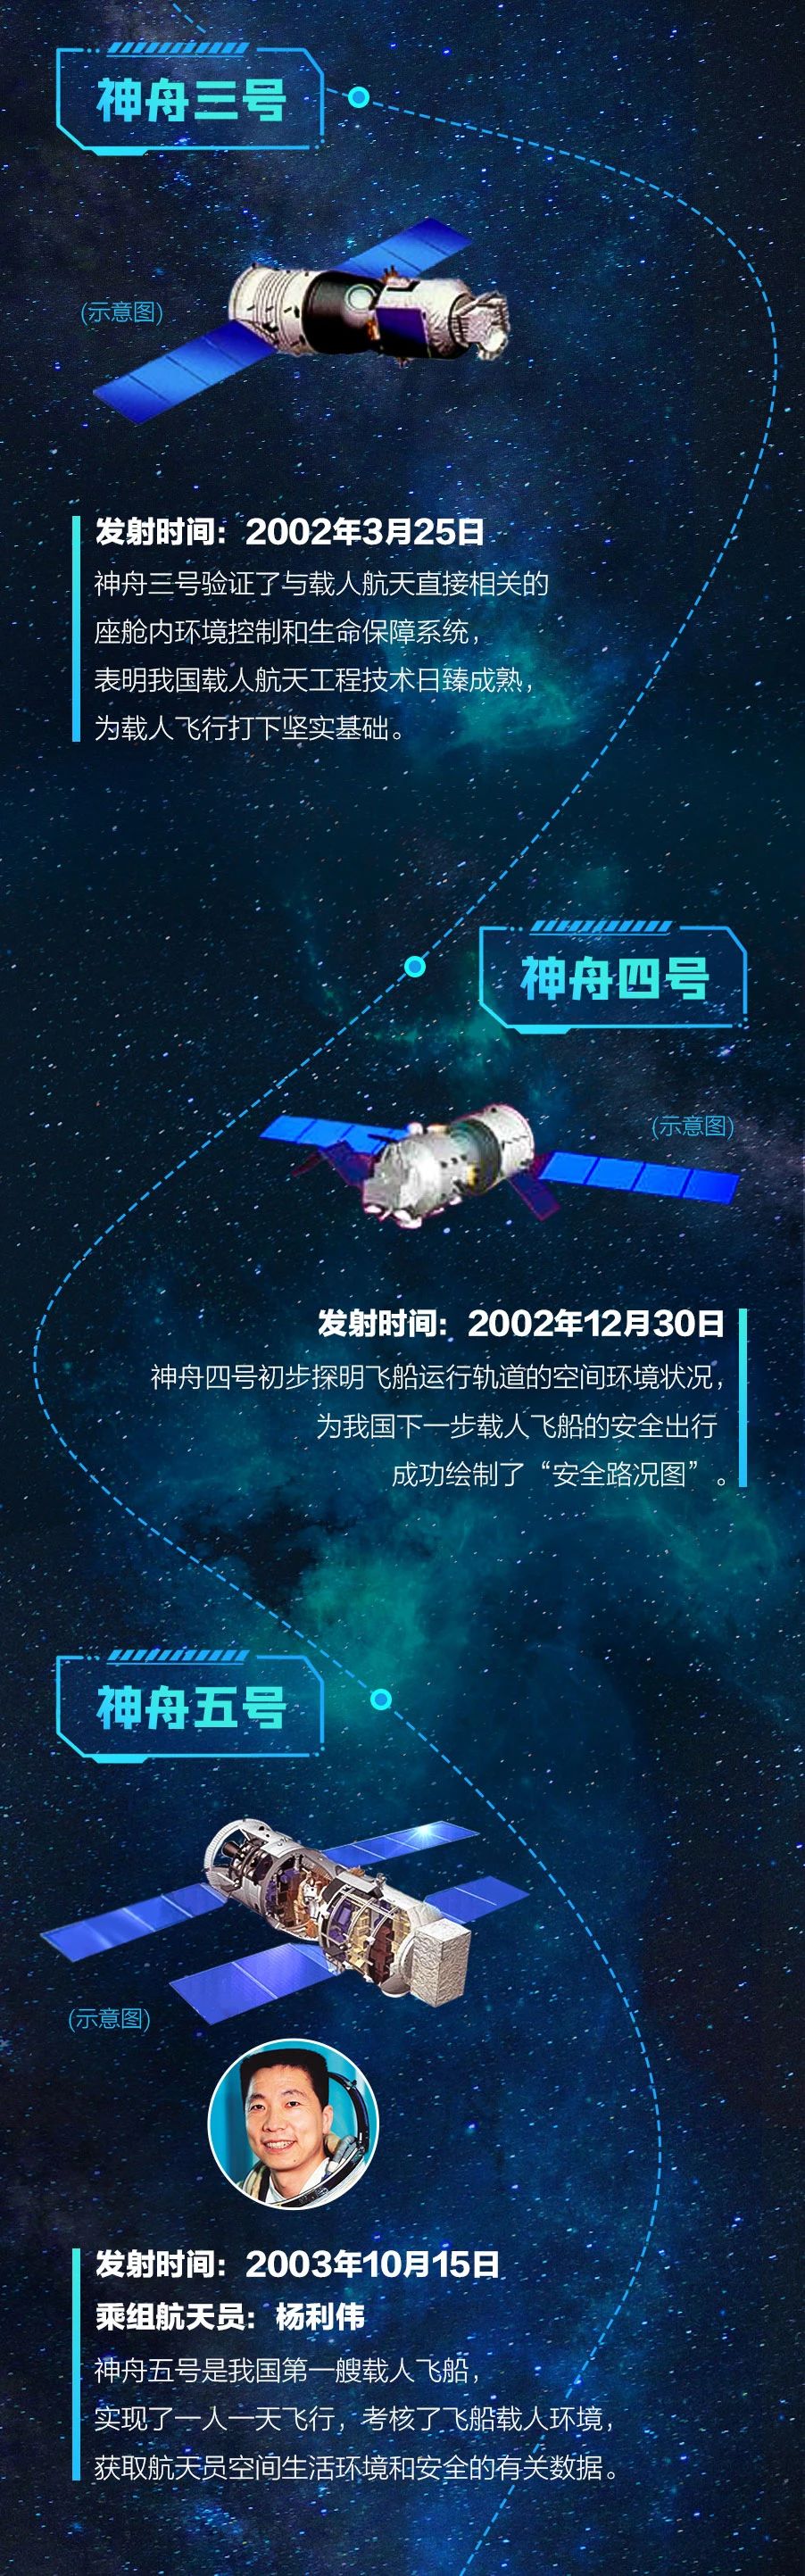 去月球nasa_nasa局长宣称不要让中国抵达月球_nasa承认月球有外星人